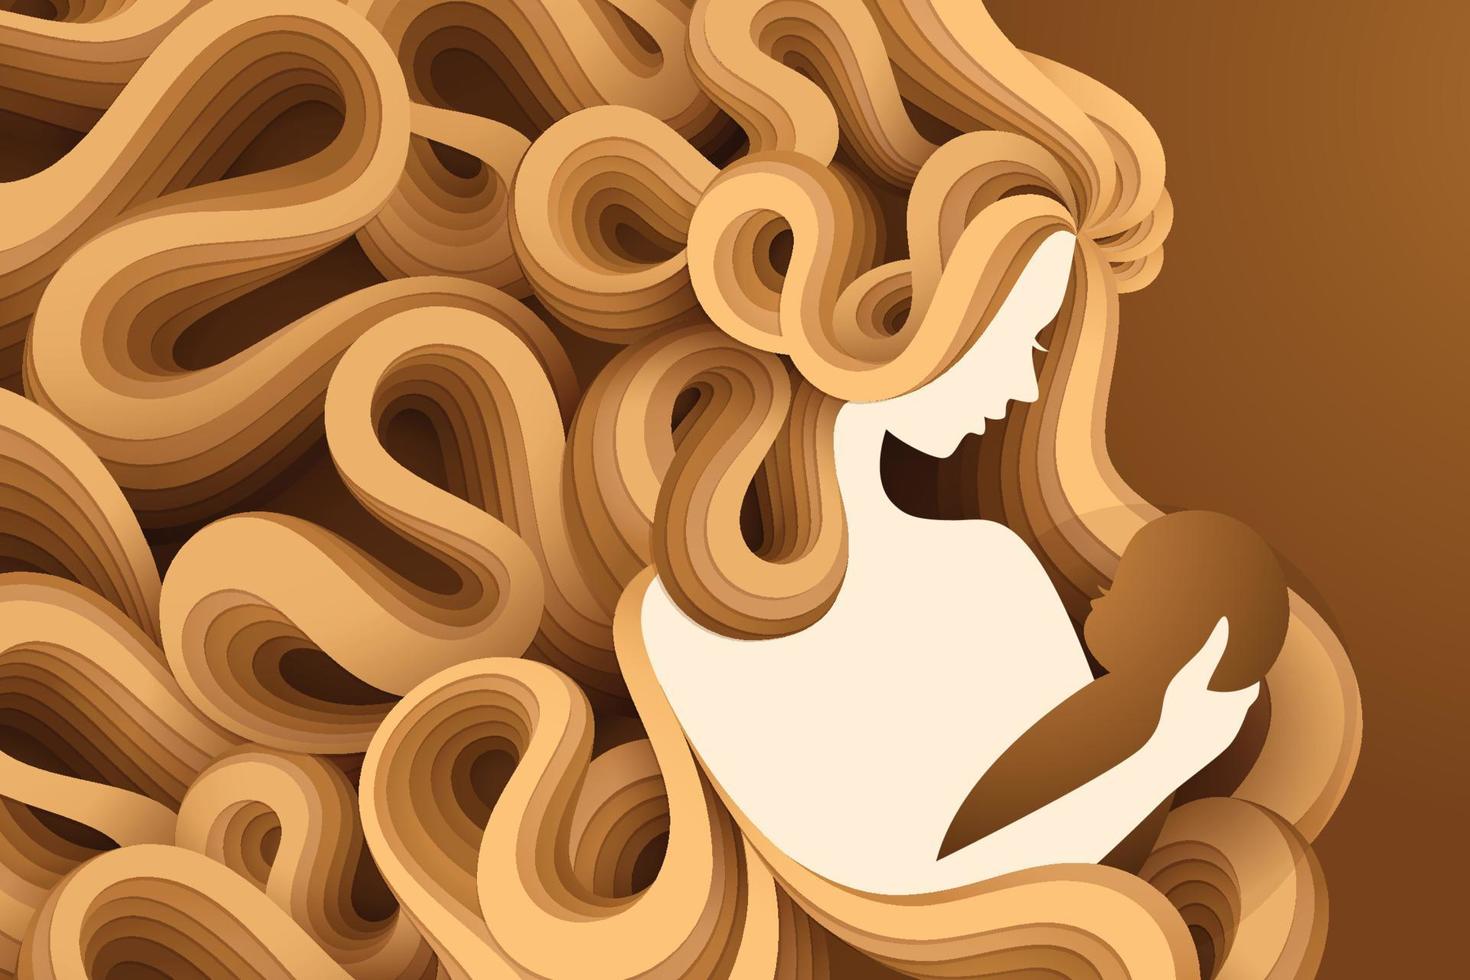 bébé dans une tendre étreinte de mère, illustration vectorielle dans un style papercut vecteur